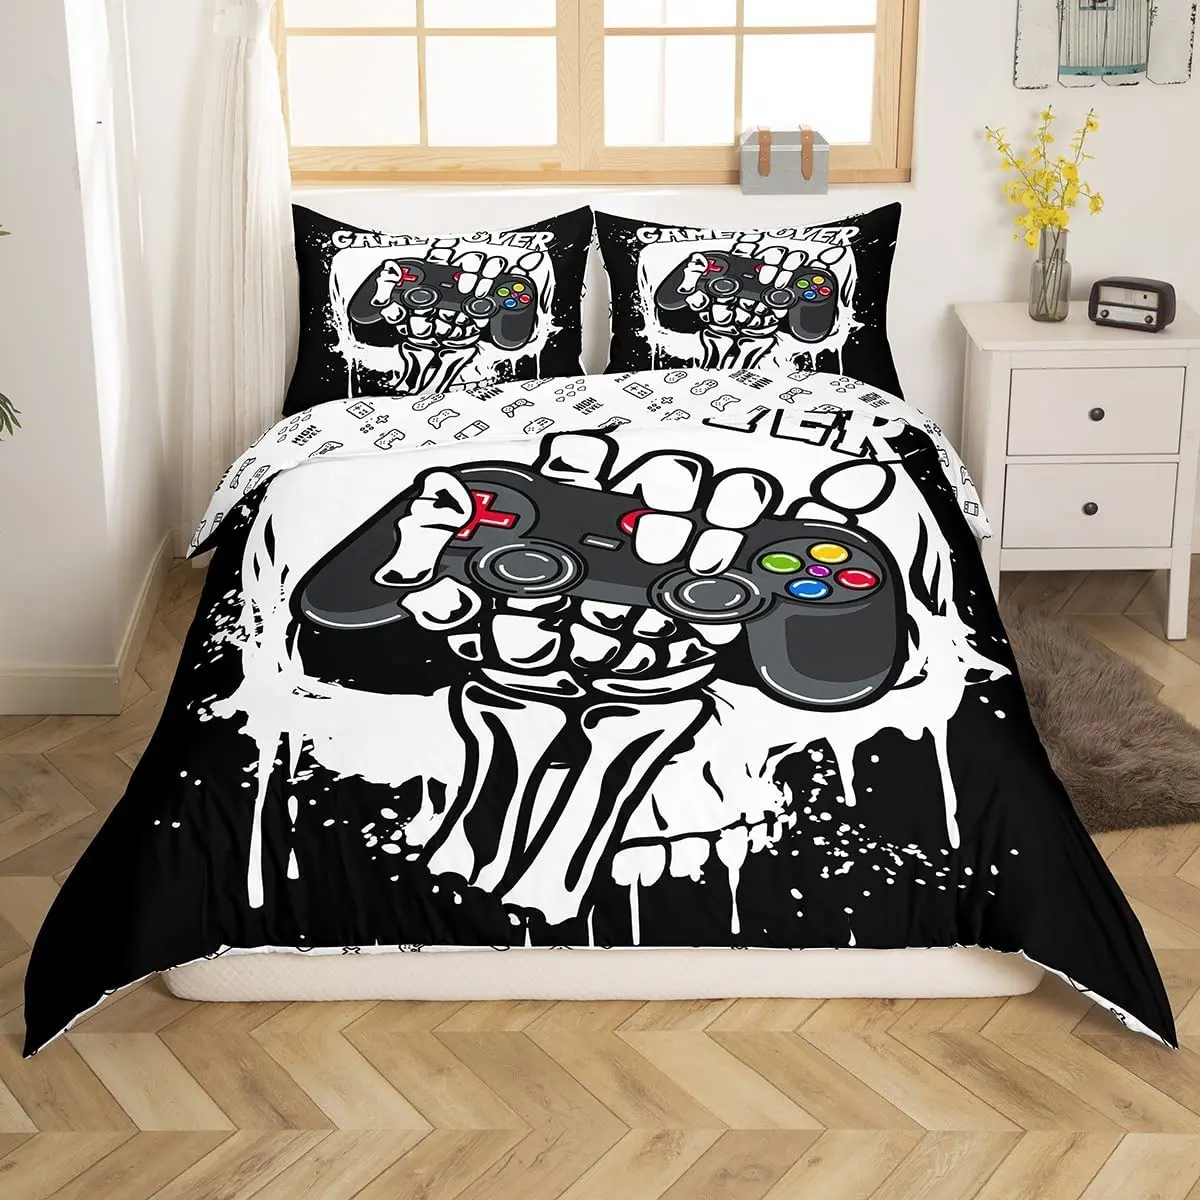 

Skull Gamer Comforter Cover Tie Dye Duvet Cover Sugar Skull Games Bedding Set For Boys Gamer Room Decor Hand Skeleton Gamepad